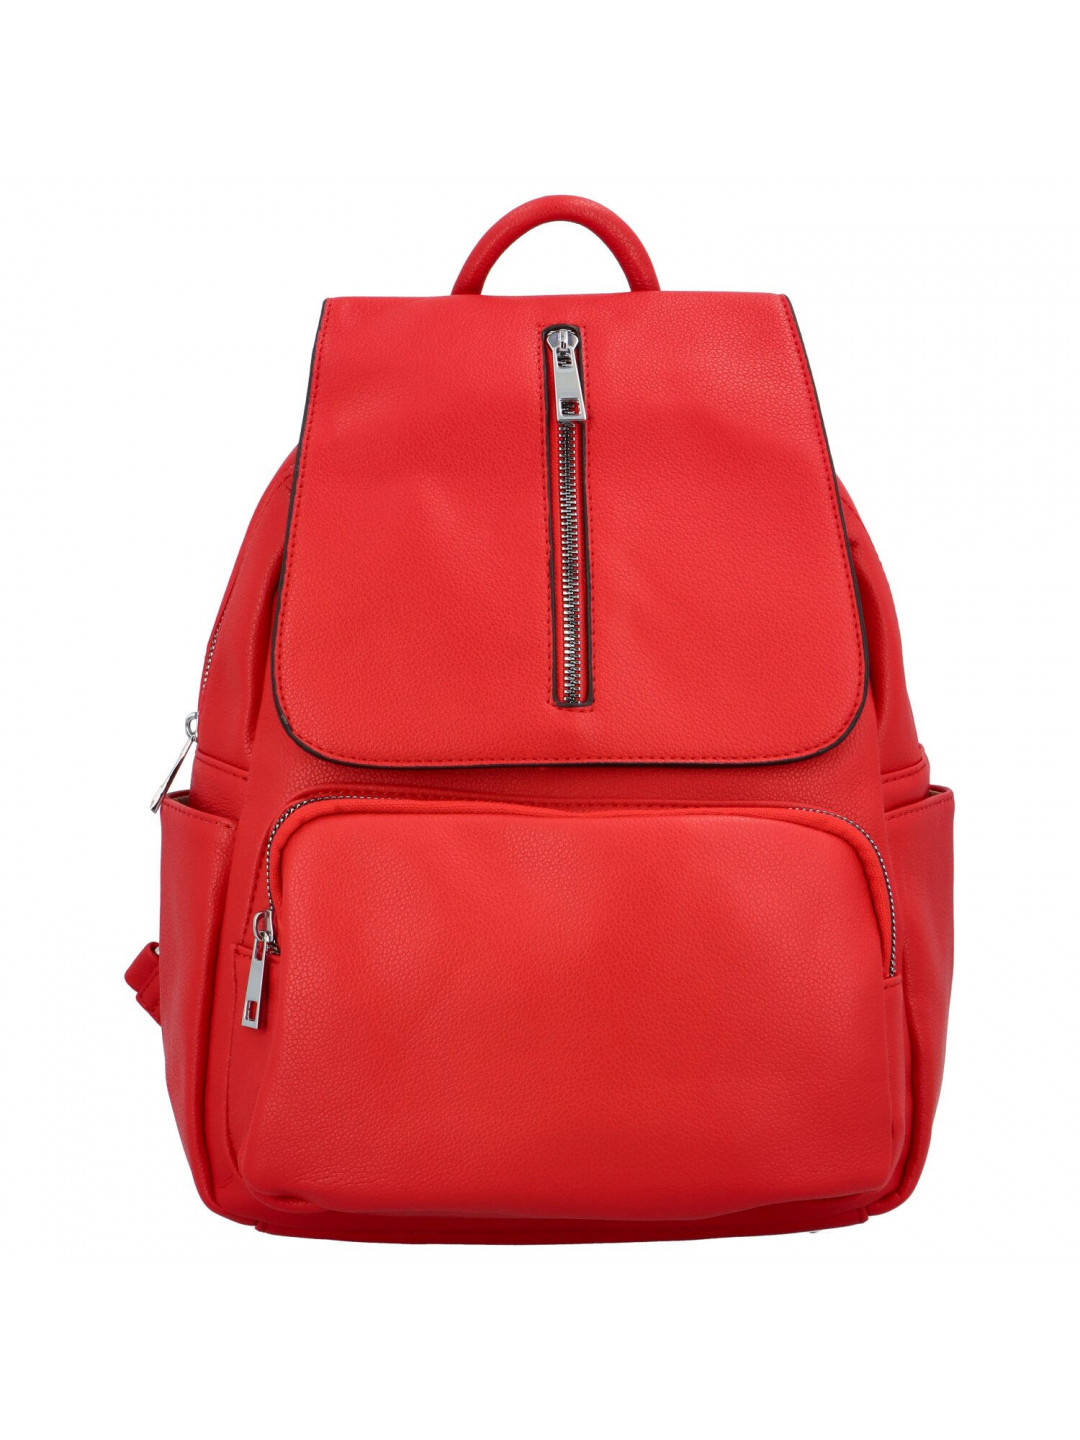 Dámský batoh kabelka červený – Maria C Otoros